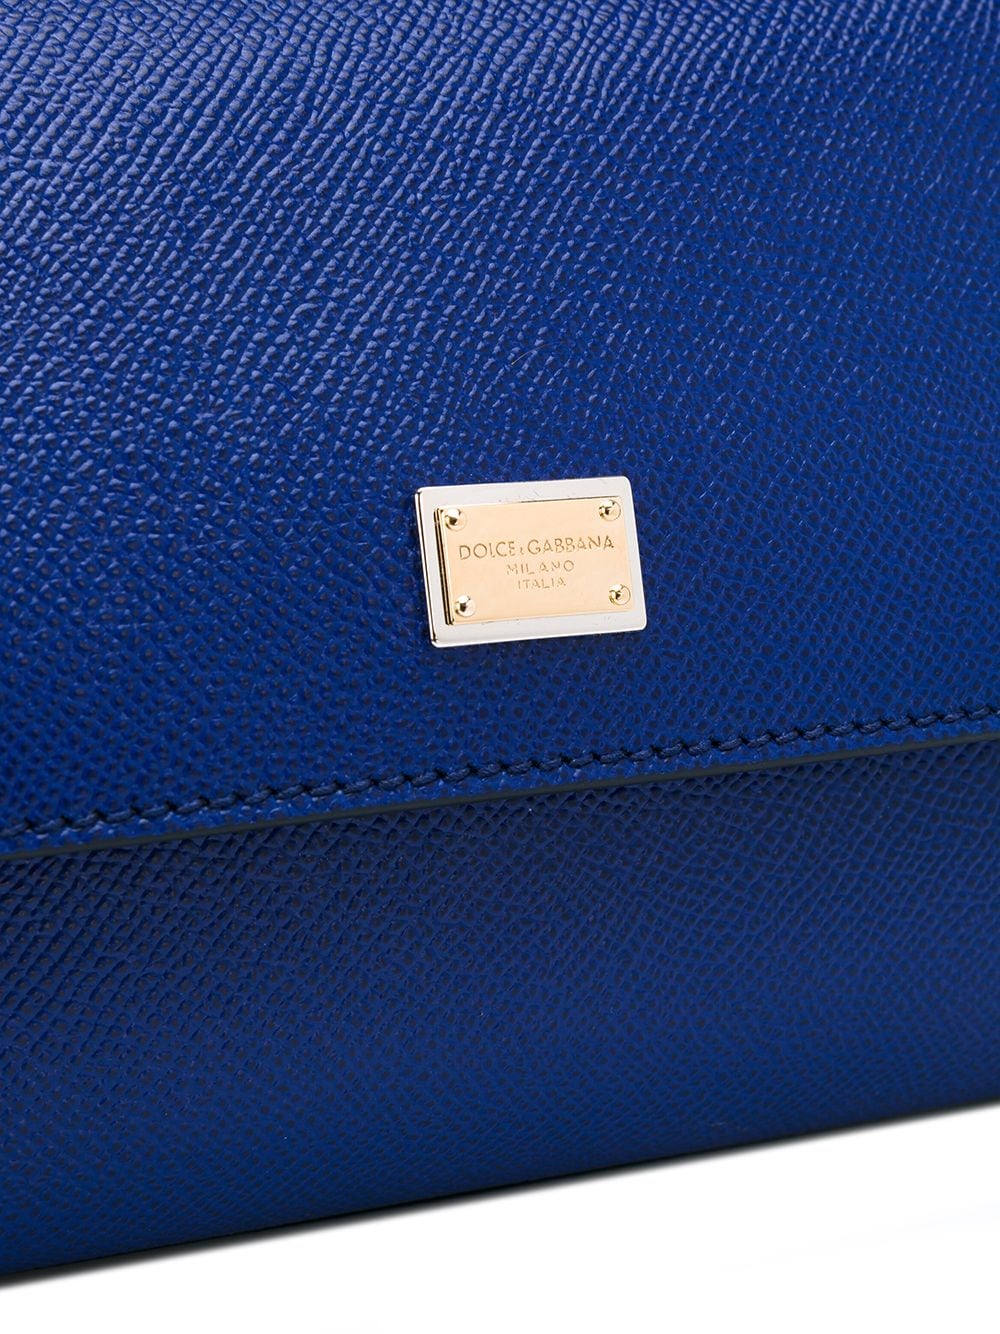 Shoulder bags Dolce & Gabbana - Sicily 58 small leather bag -  BB6622AV3858H544